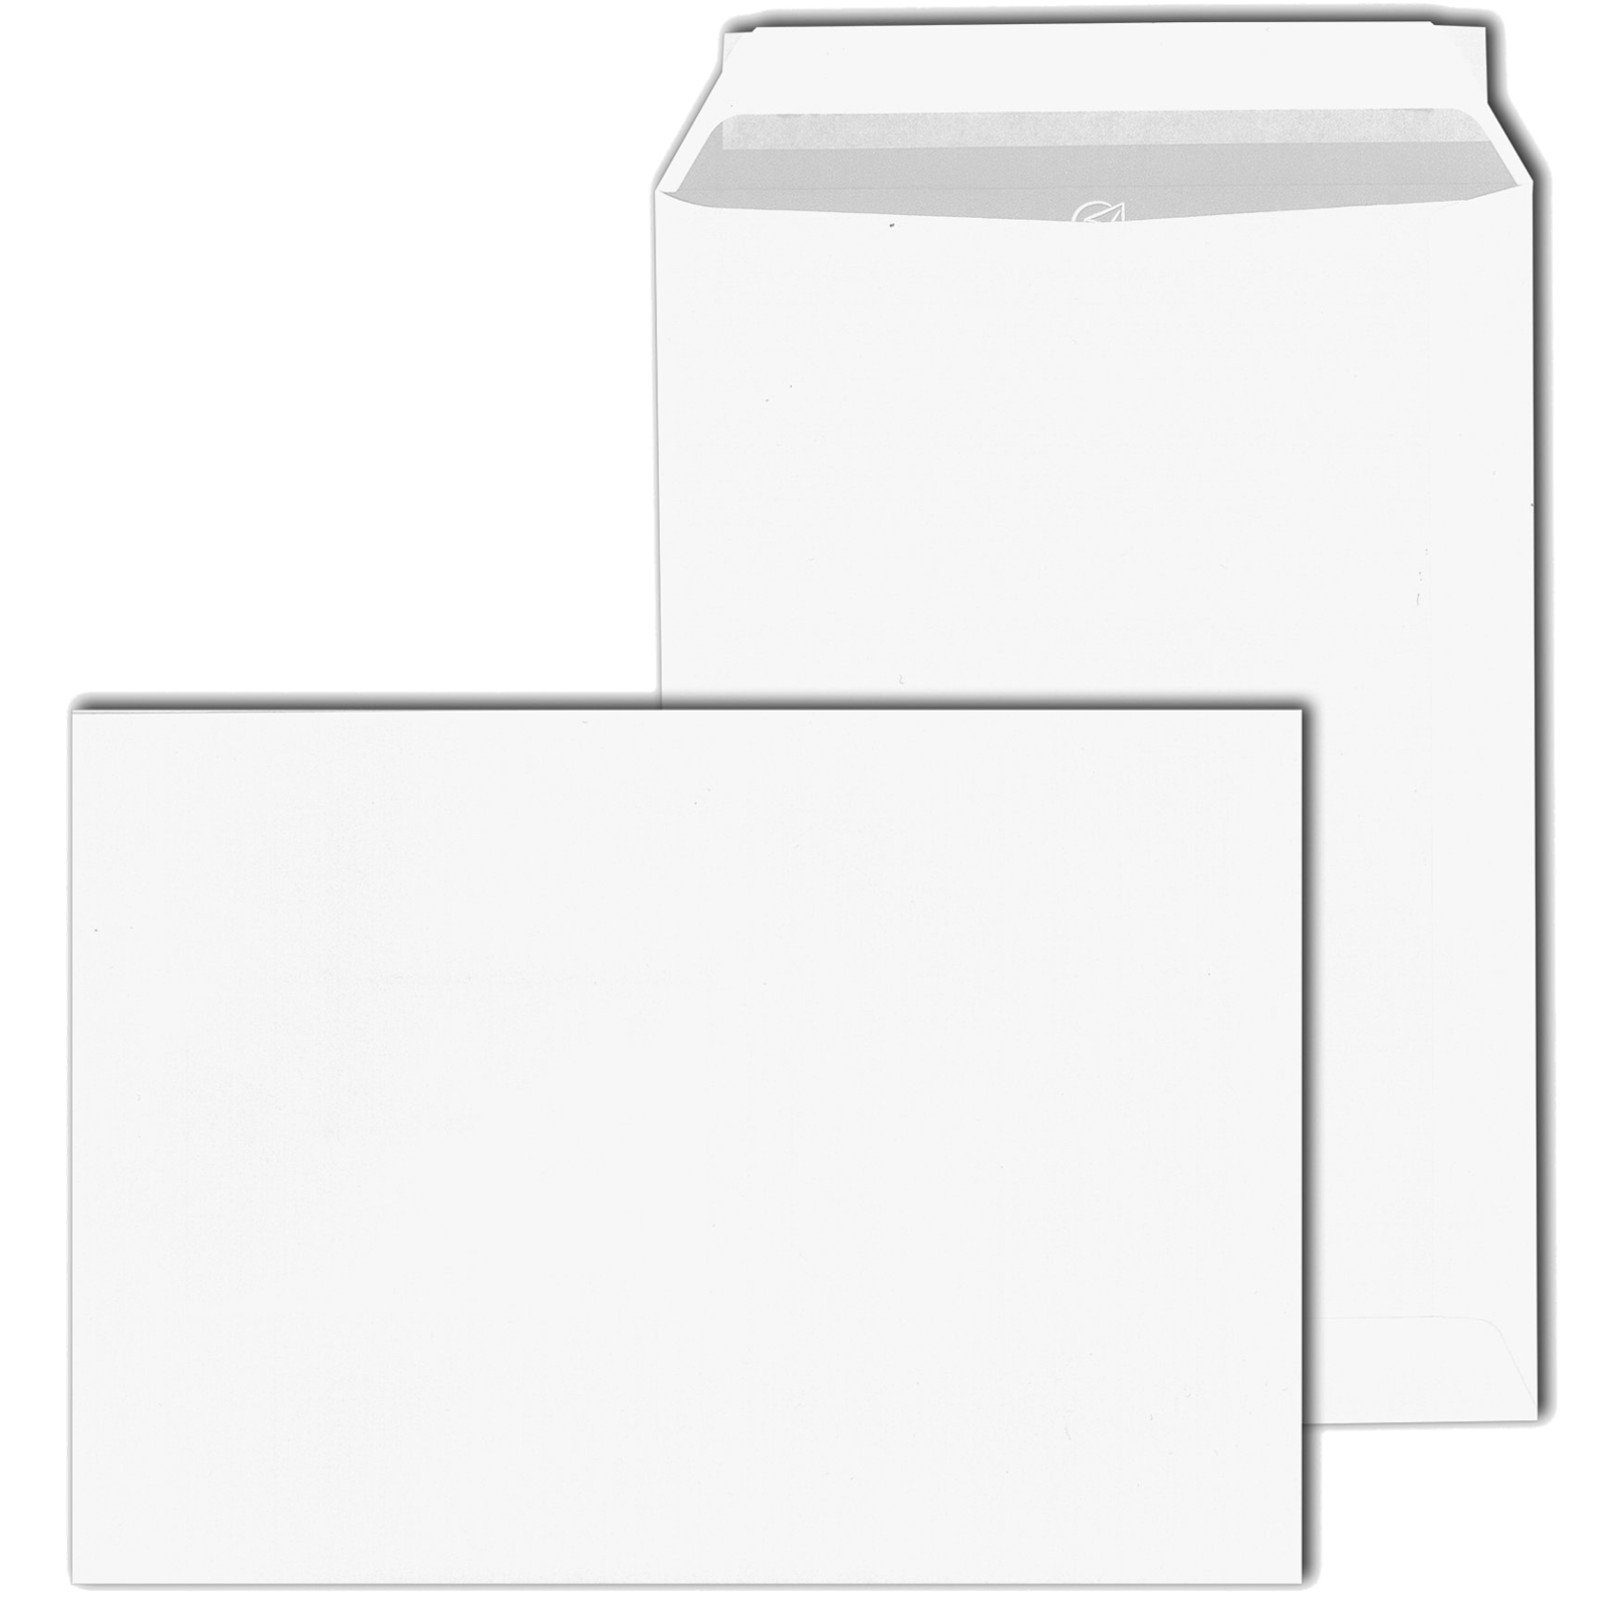 KK Verpackungen Briefumschlag, Versandtaschen Kuverts DIN C5 162 x 229 mm Selbstklebung weiß